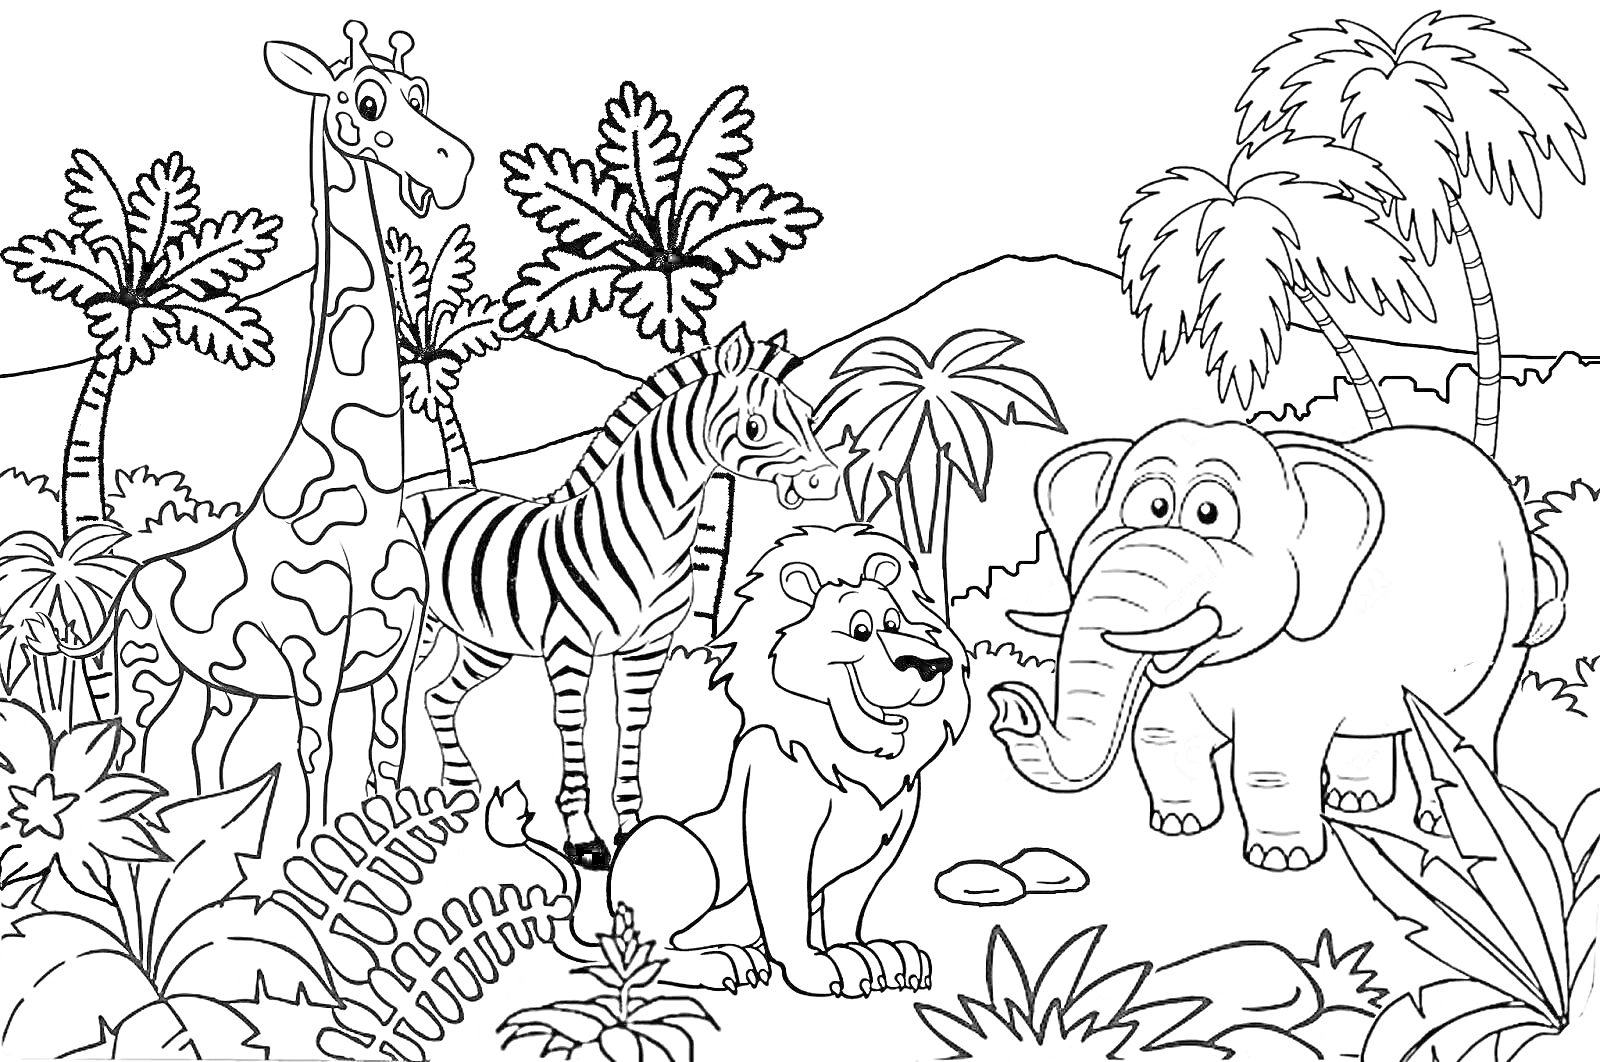 Раскраска Жираф, зебра, лев и слон на фоне африканской саванны с пальмами и растительностью